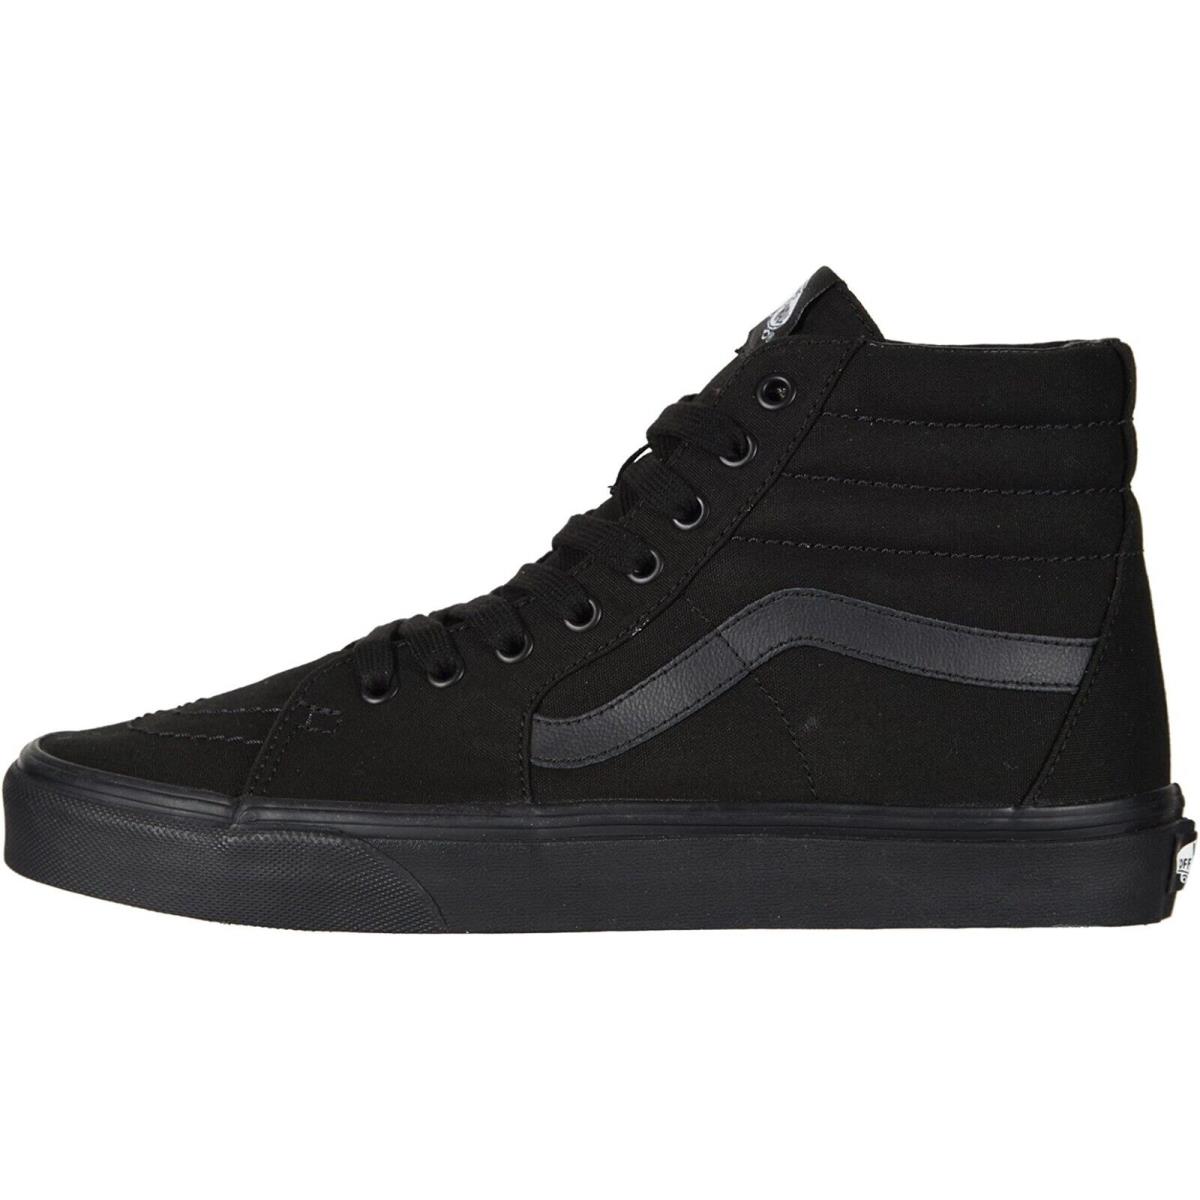 Vans SK8-HI Unisex Canvas Sneakers Mens Womens High Top Skate Shoes Black/Black